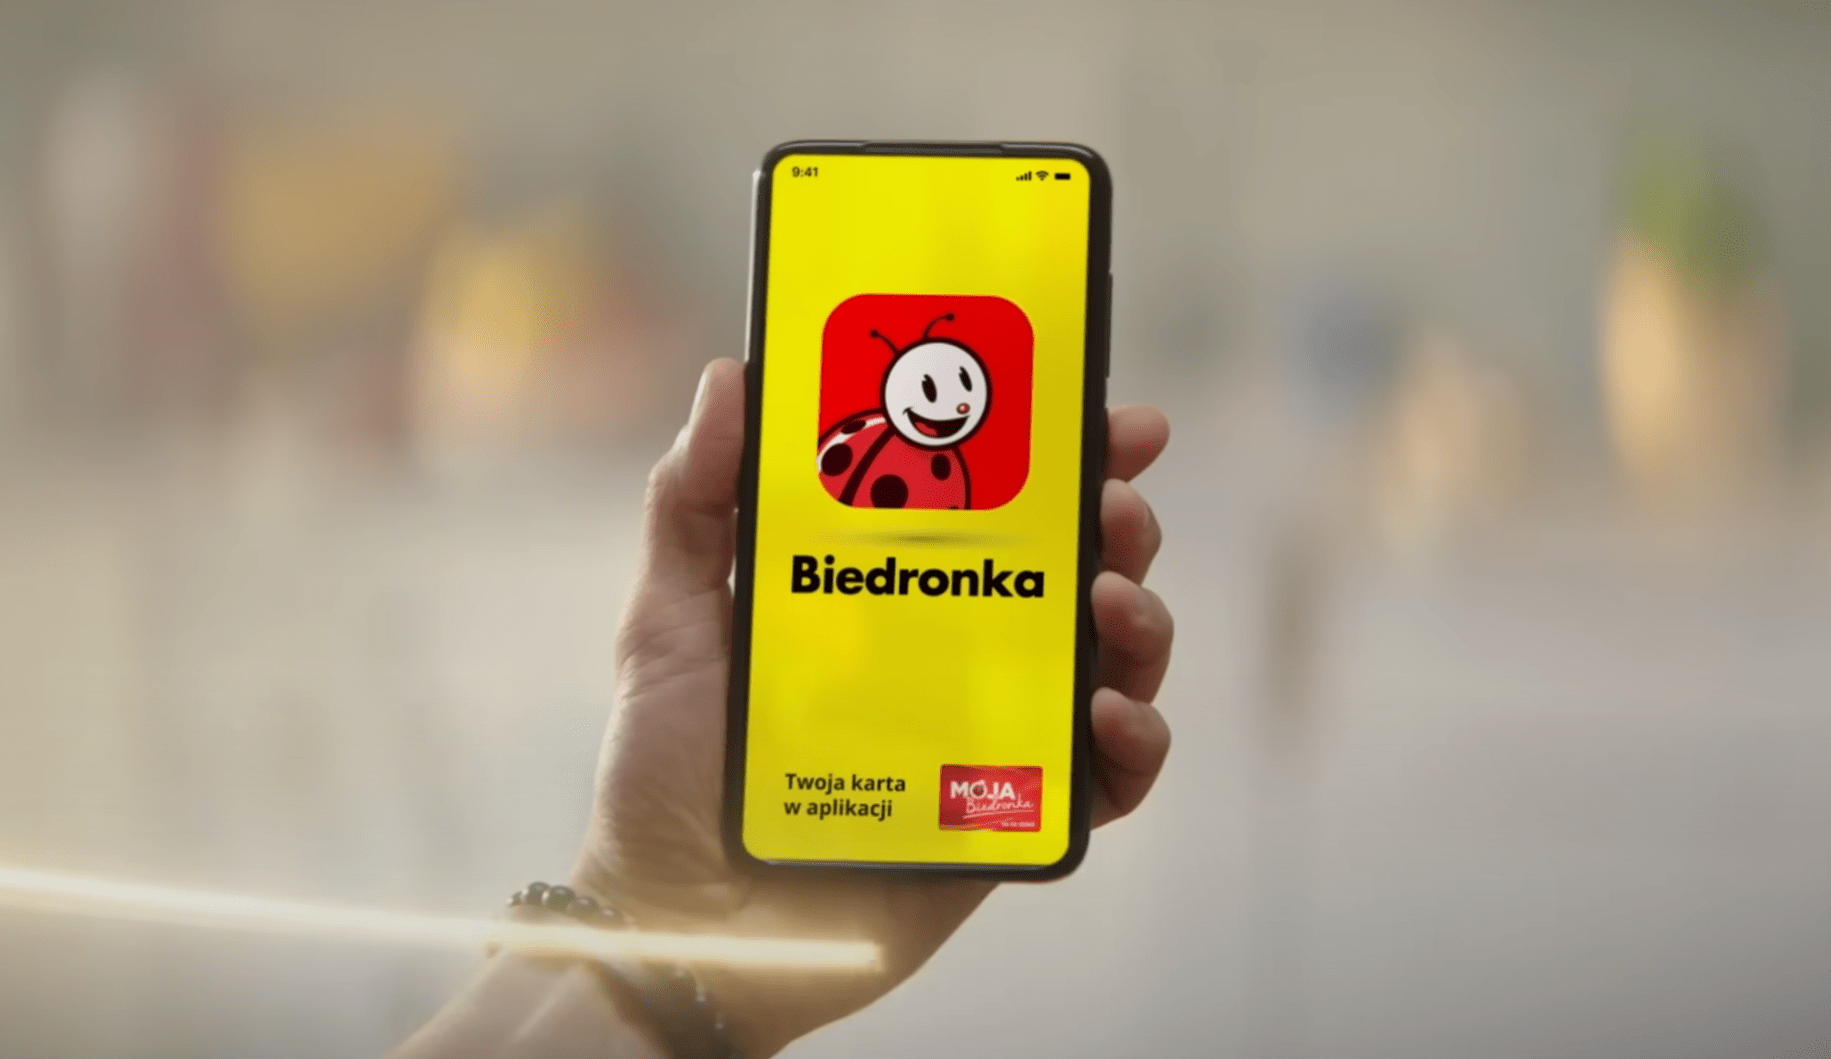 Ręka trzymająca smartfon z ekranem wyświetlającym aplikację Biedronka z logo w postaci czerwonego biedronki na żółtym tle oraz napisem "Twoja karta w aplikacji MOJA Biedronka".